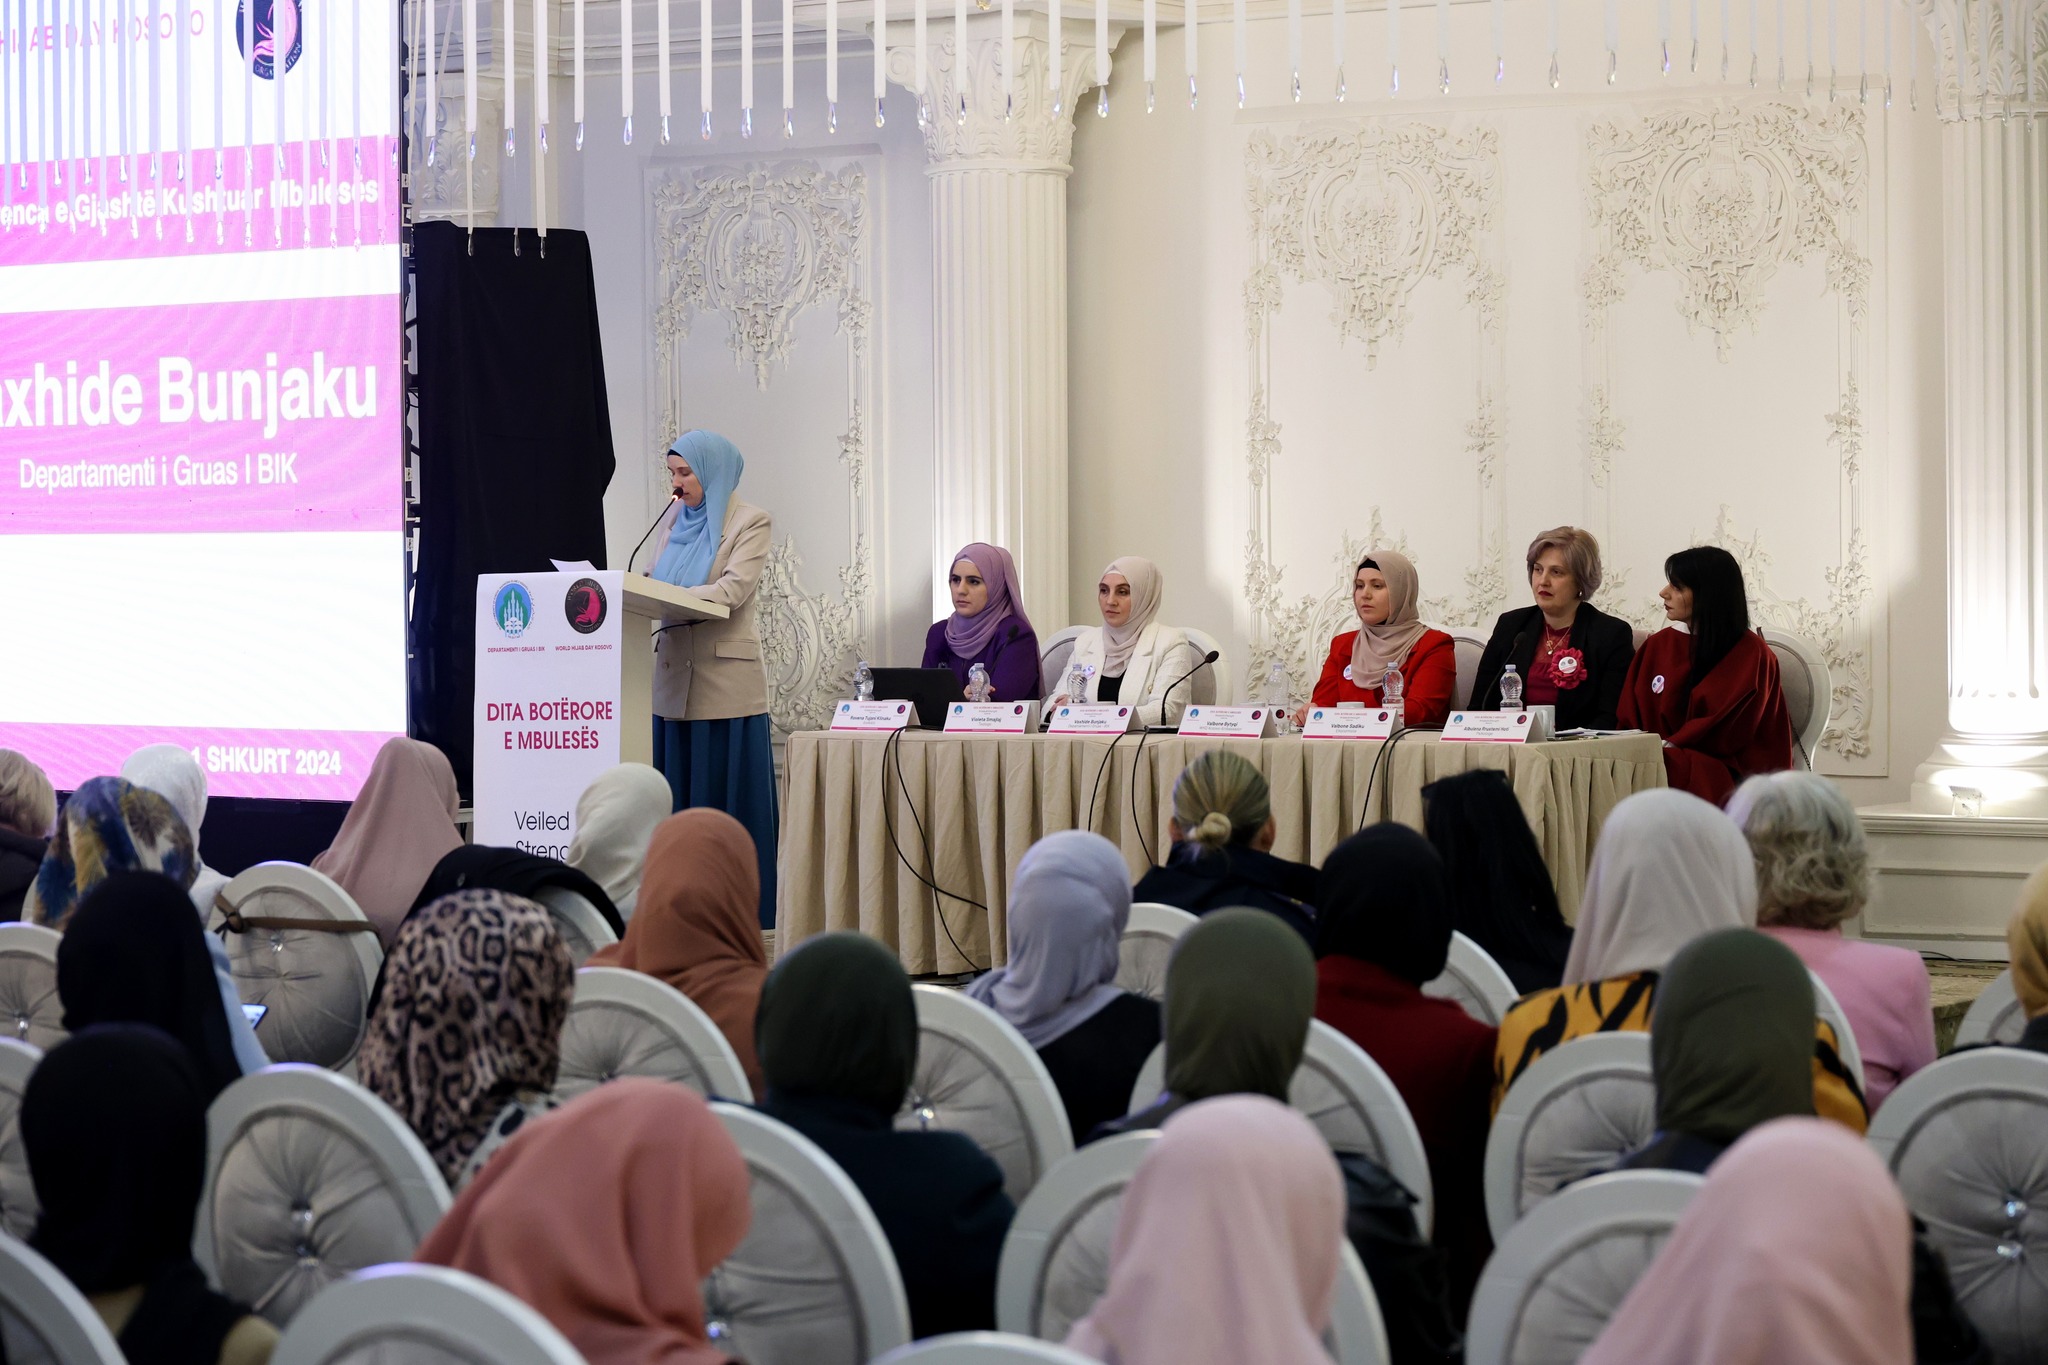 في مؤتمر “اليوم العالمي للحجاب” أكدن مسلمات كوسوفا على أن النساء المحجبات أثبتن وبشكل عملي أن الحجاب لم يمنعهن عن تحقيق أهدافهن في مختلف مجالات الحياة